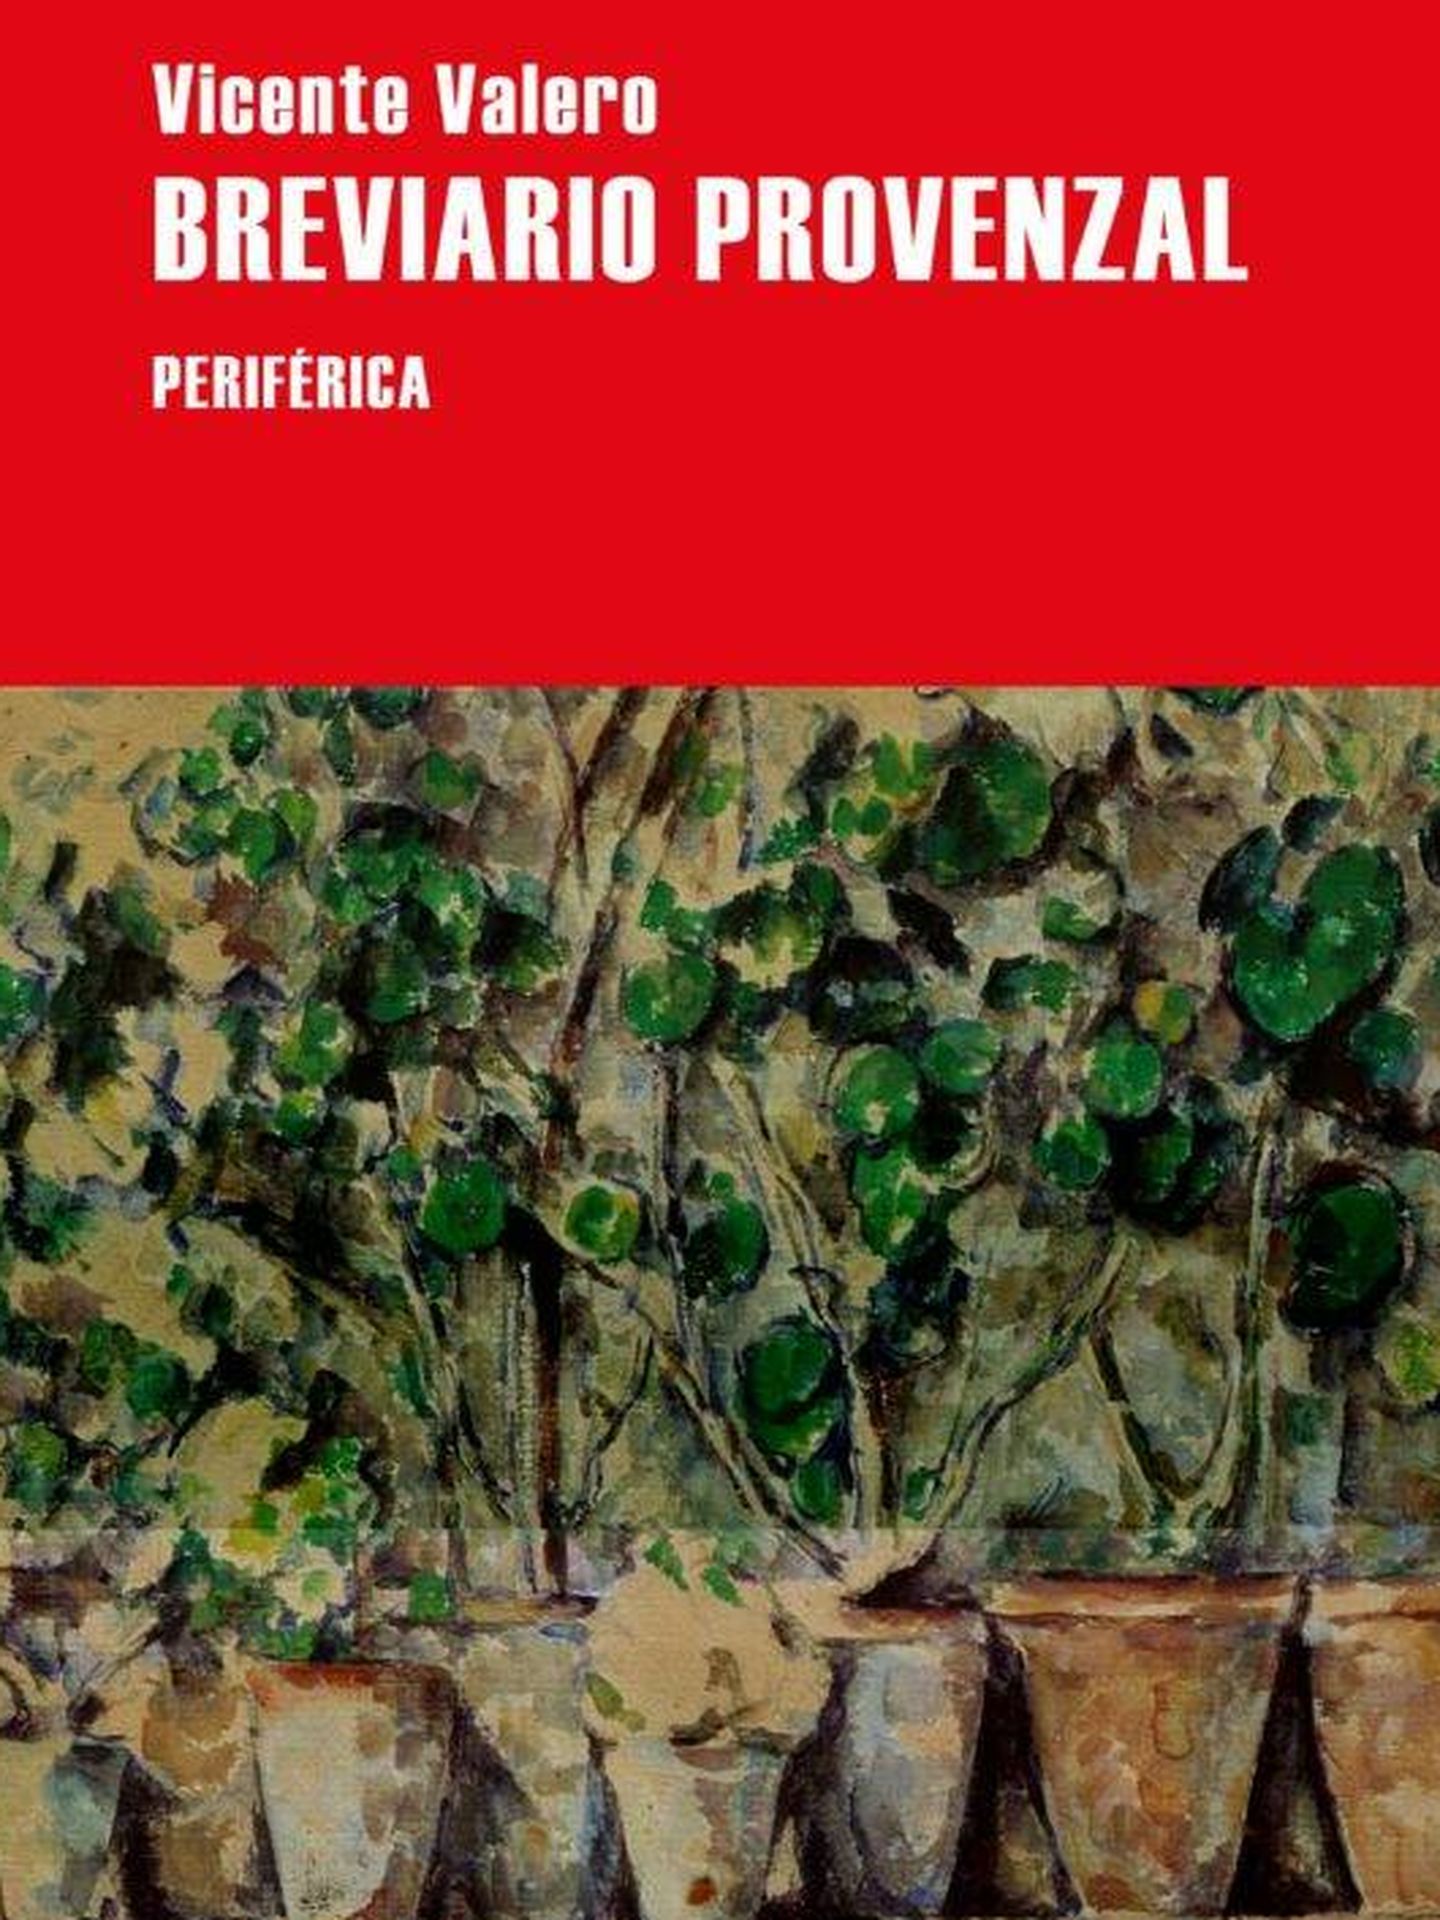 'Breviario provenzal'. (Periférica)